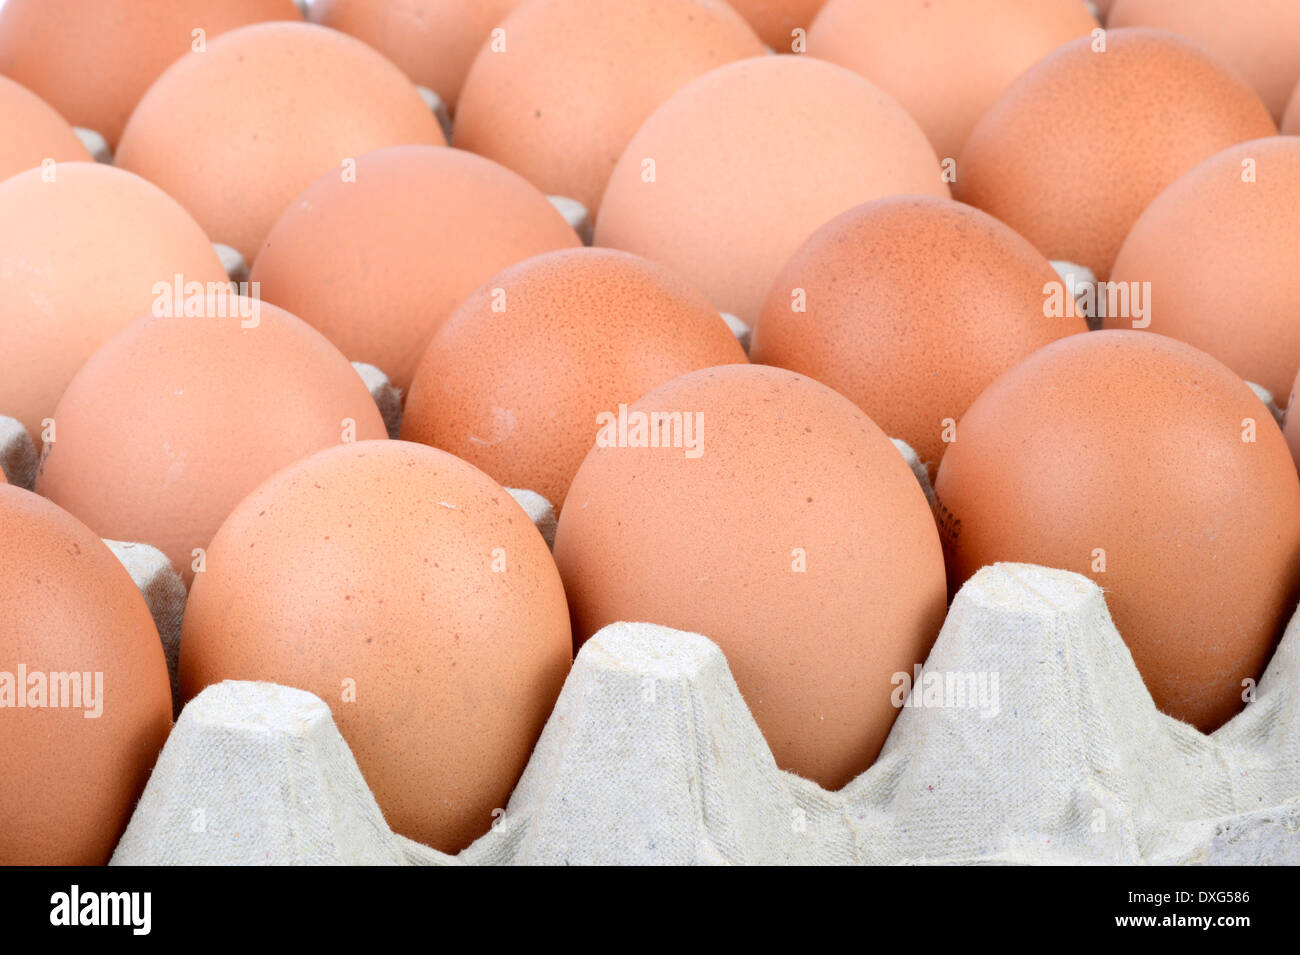 Los huevos de gallina, marrón Foto de stock